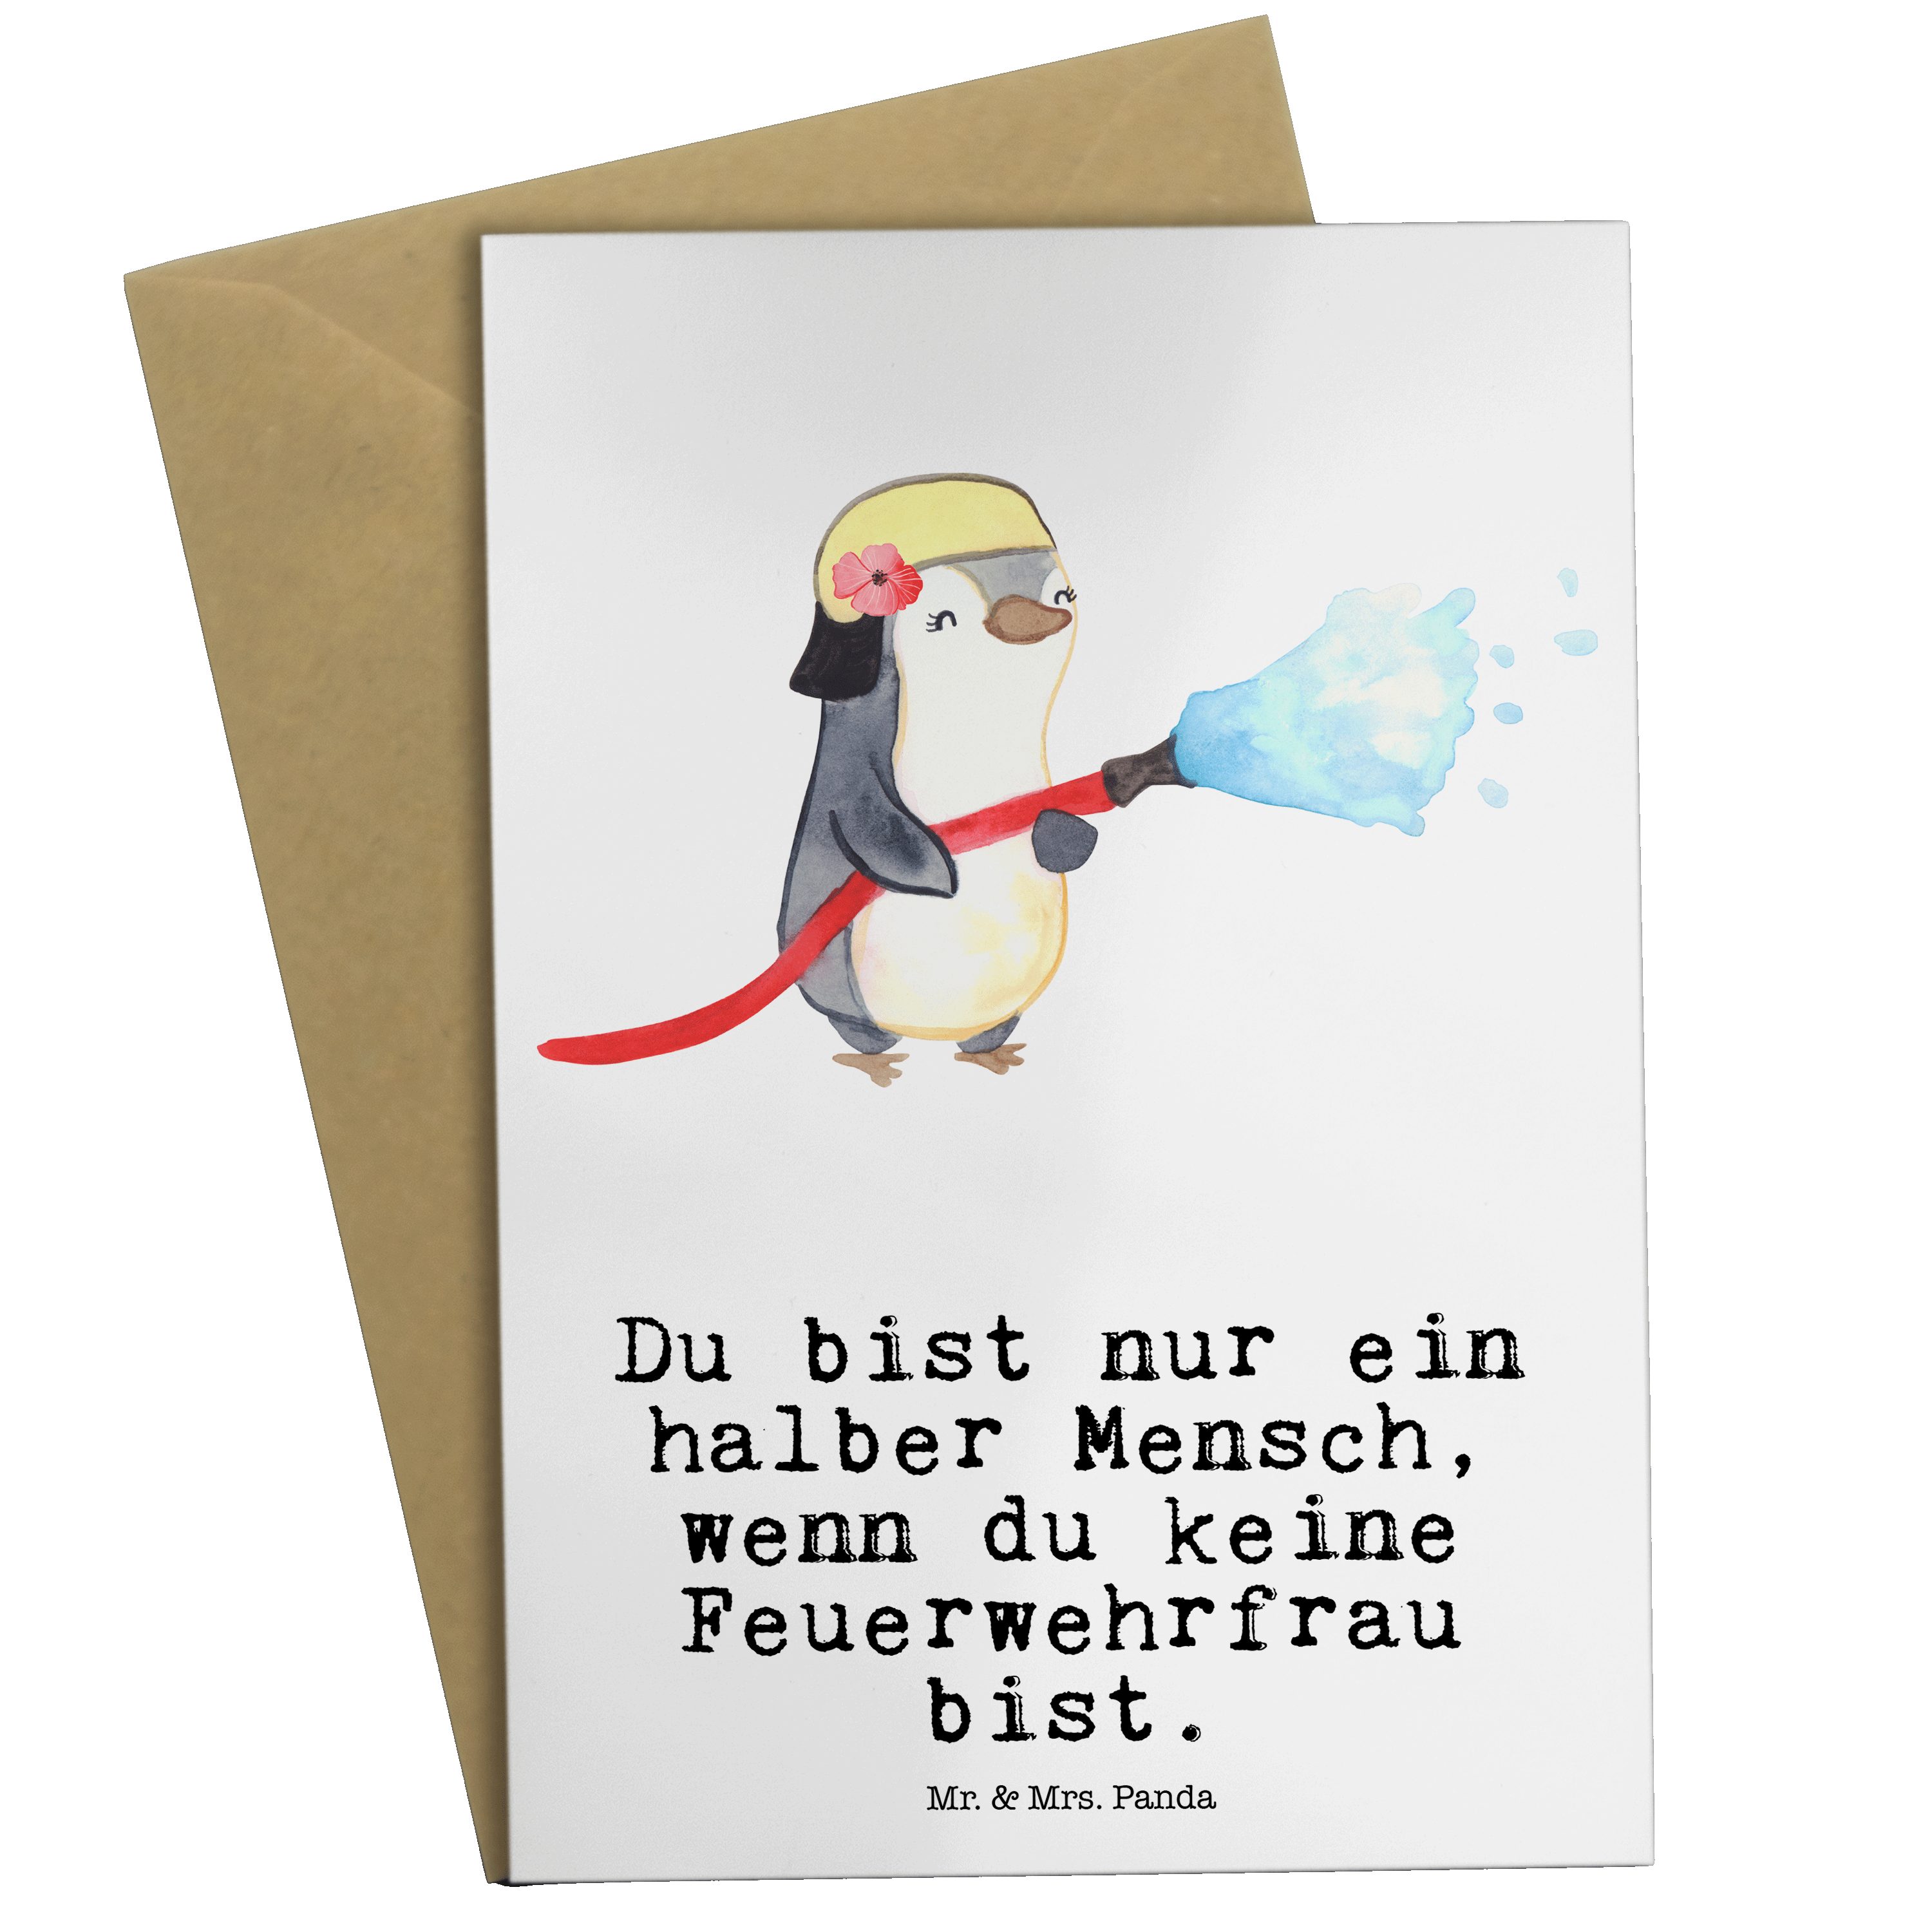 Mr. & Mrs. Panda Grußkarte Feuerwehrfrau mit Herz - Weiß - Geschenk, Einladungskarte, Feuerwehrh | Grußkarten